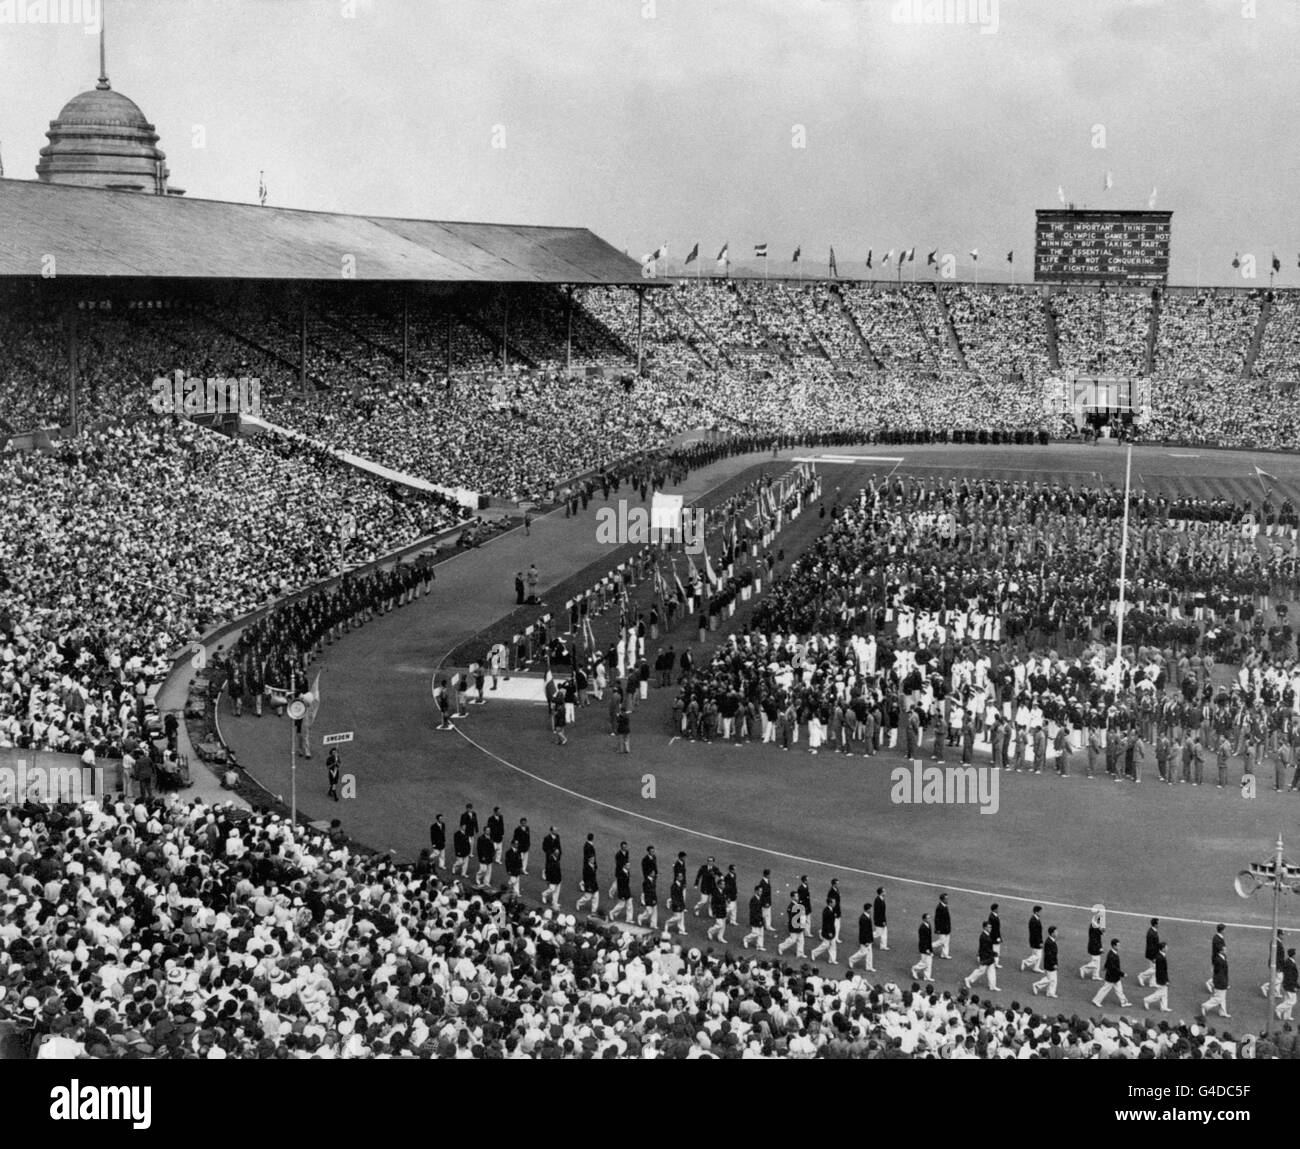 Ein allgemeiner Blick auf die Wembley Arena, London, mit Mitgliedern des schwedischen Olympischen Teams marschieren vorbei, vor der offiziellen Eröffnung der Spiele von H.M. The King 16/1/04: Die Blaupause der britischen Hauptstadt Hoffnungen auf die Ausrichtung der olympischen Spiele 2012 wird enthüllt. Stockfoto